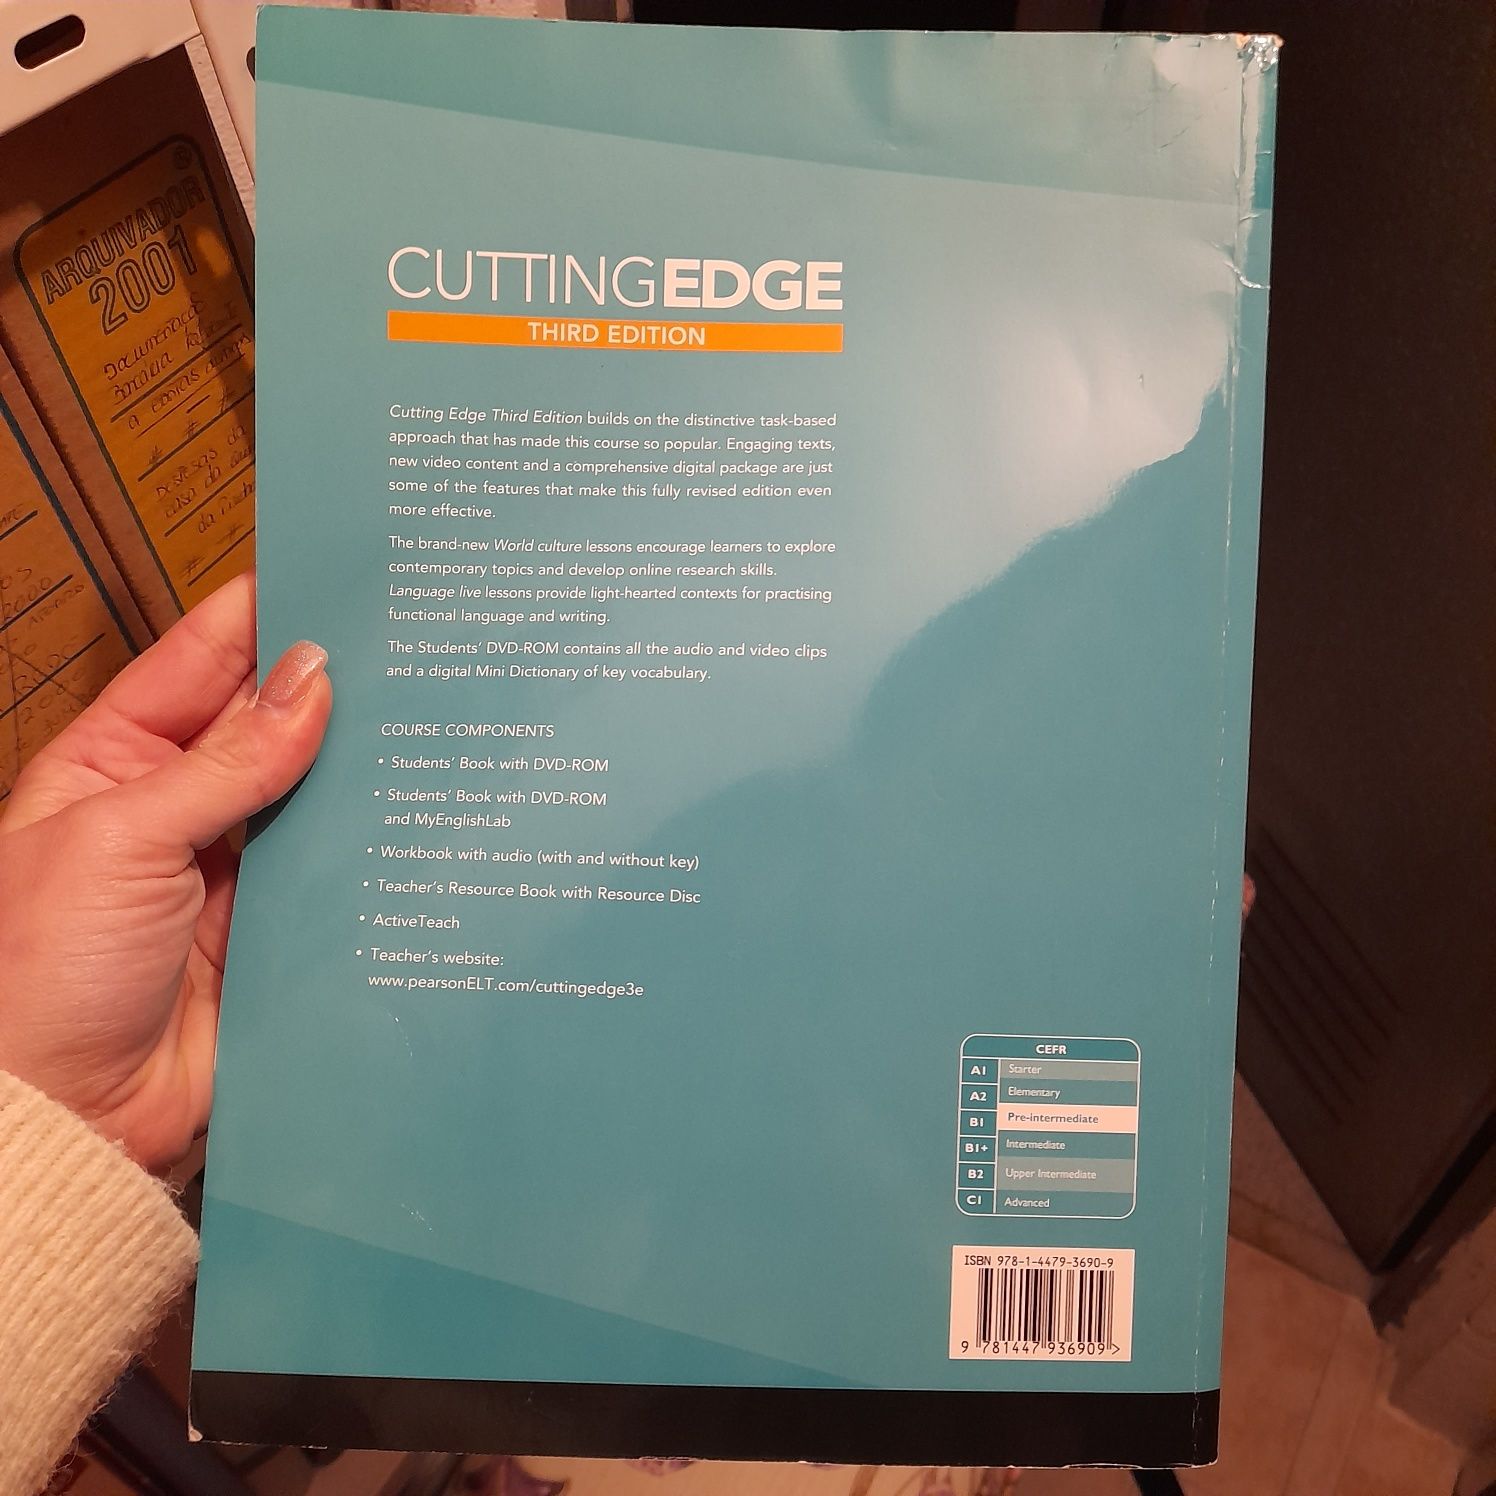 Cutting edge, pre-intermediate